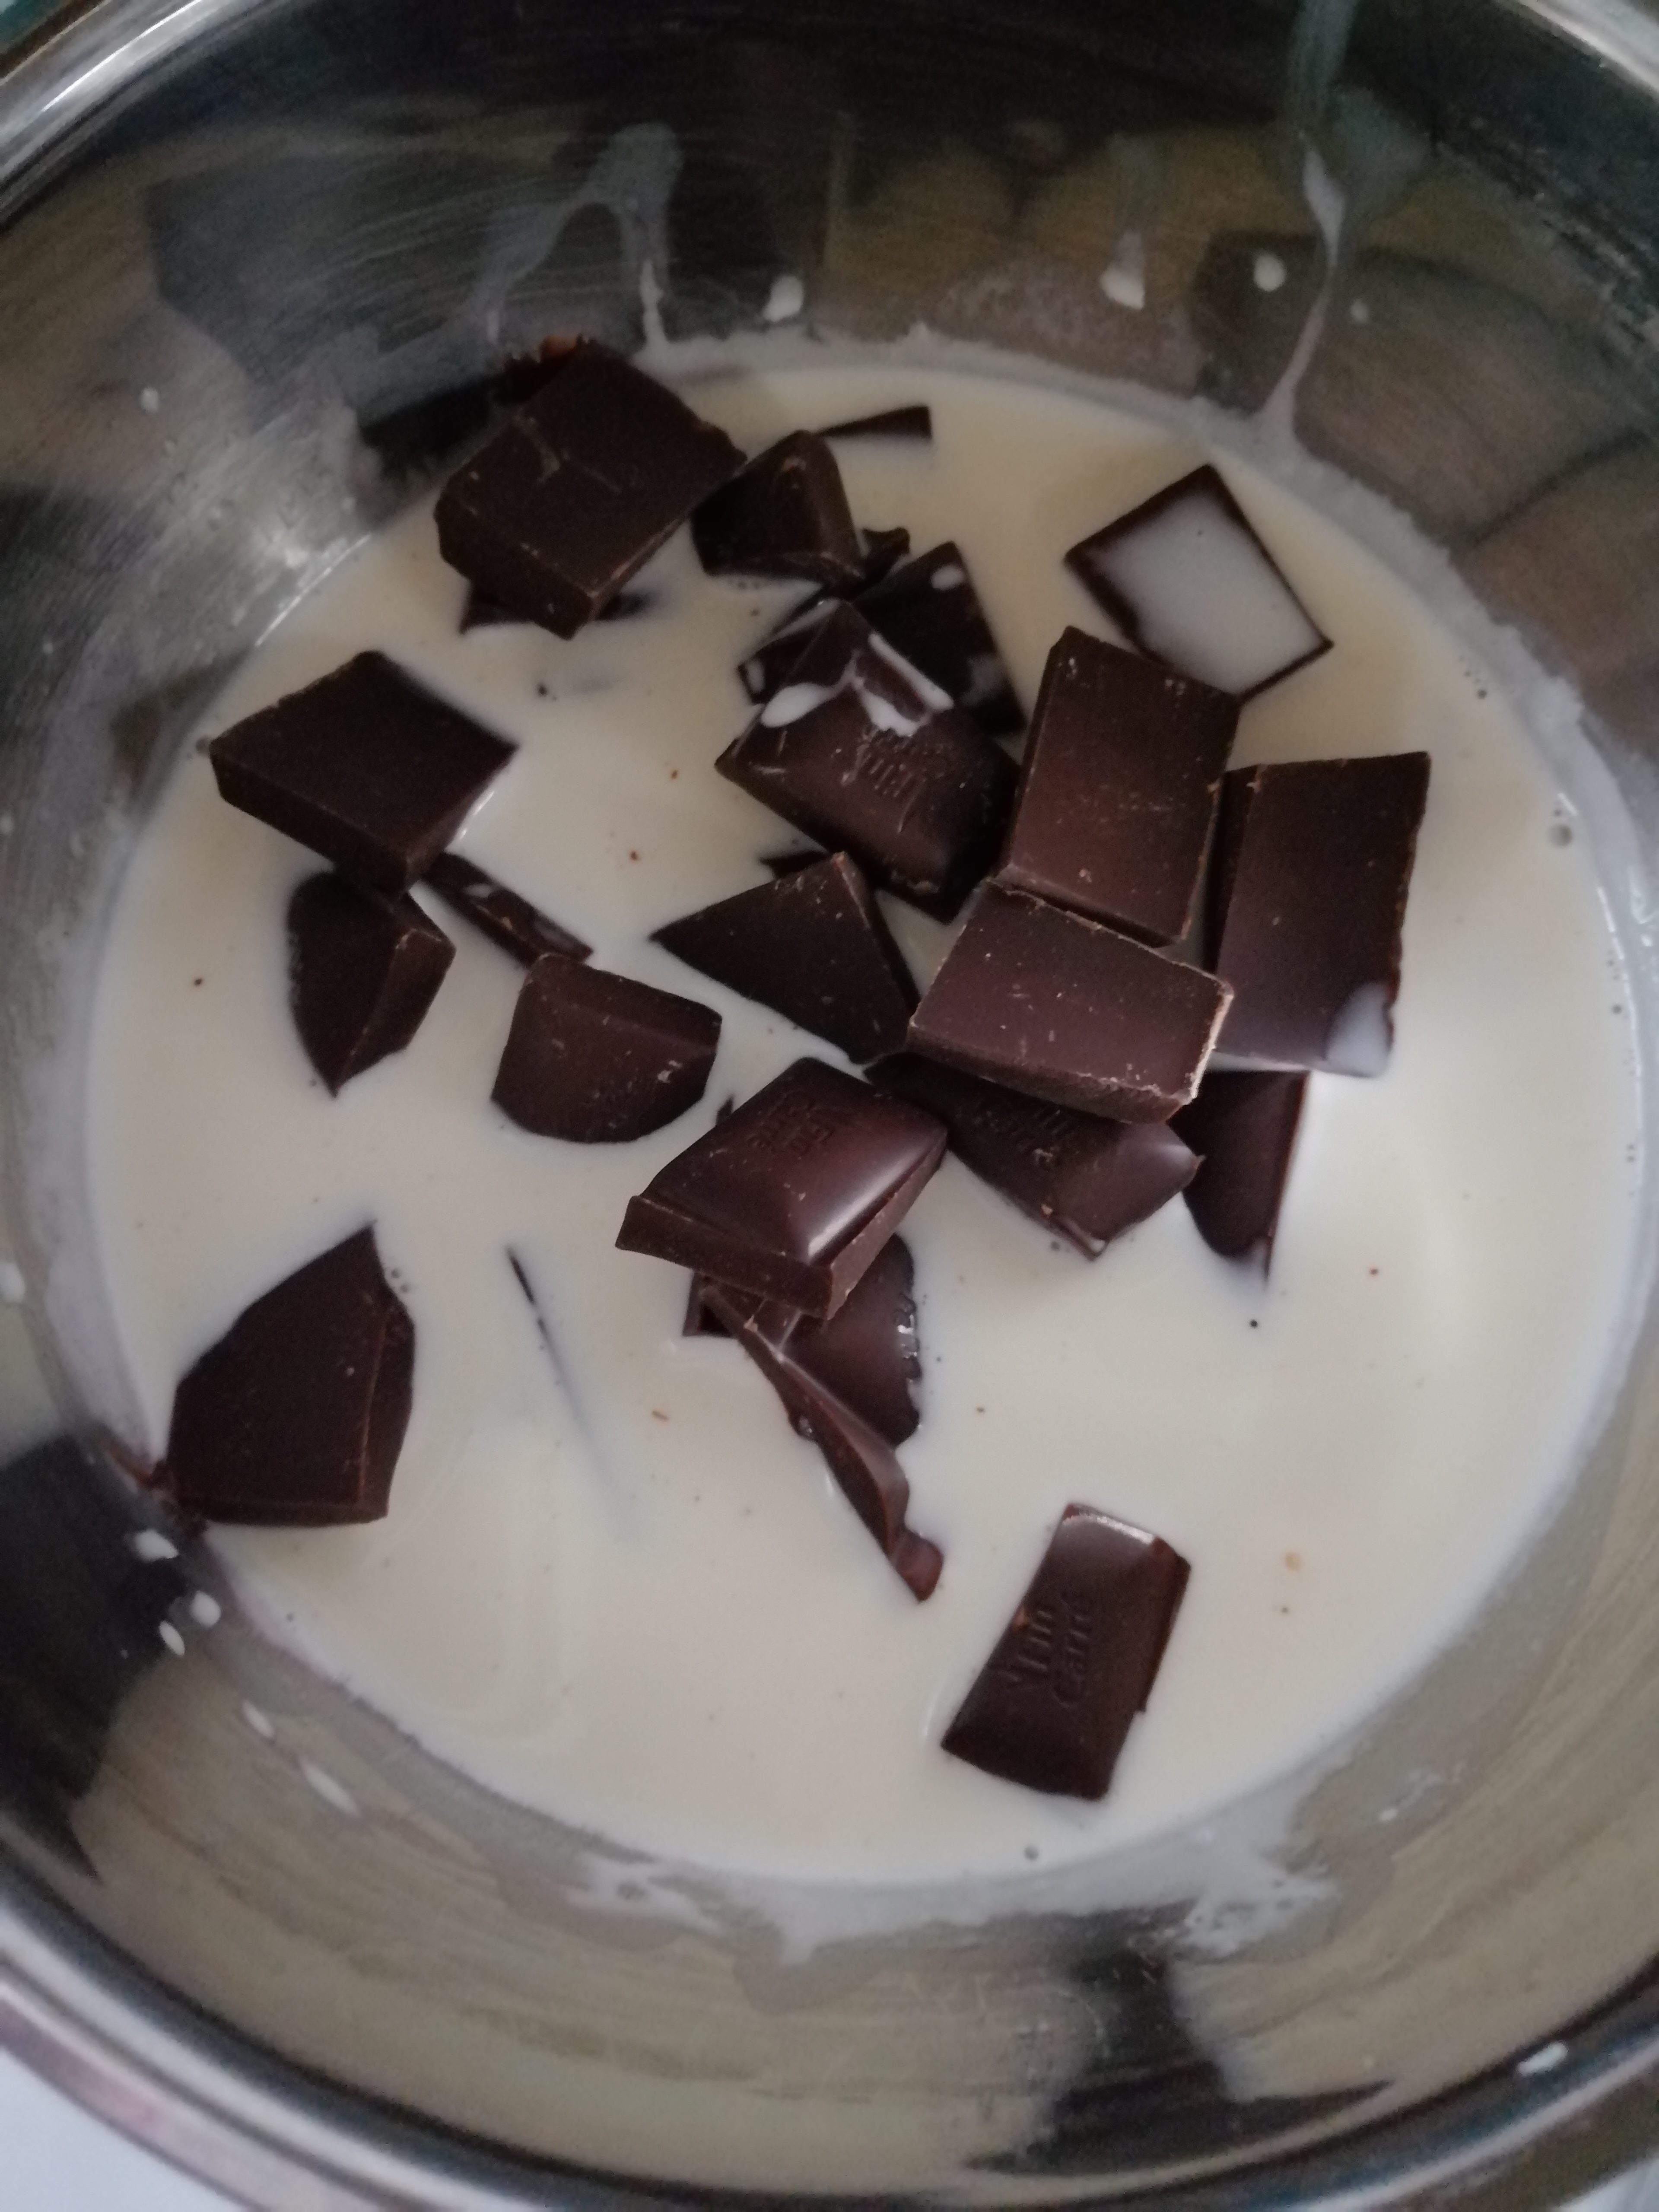 Desert tort de ciocolata cu dulce de leche